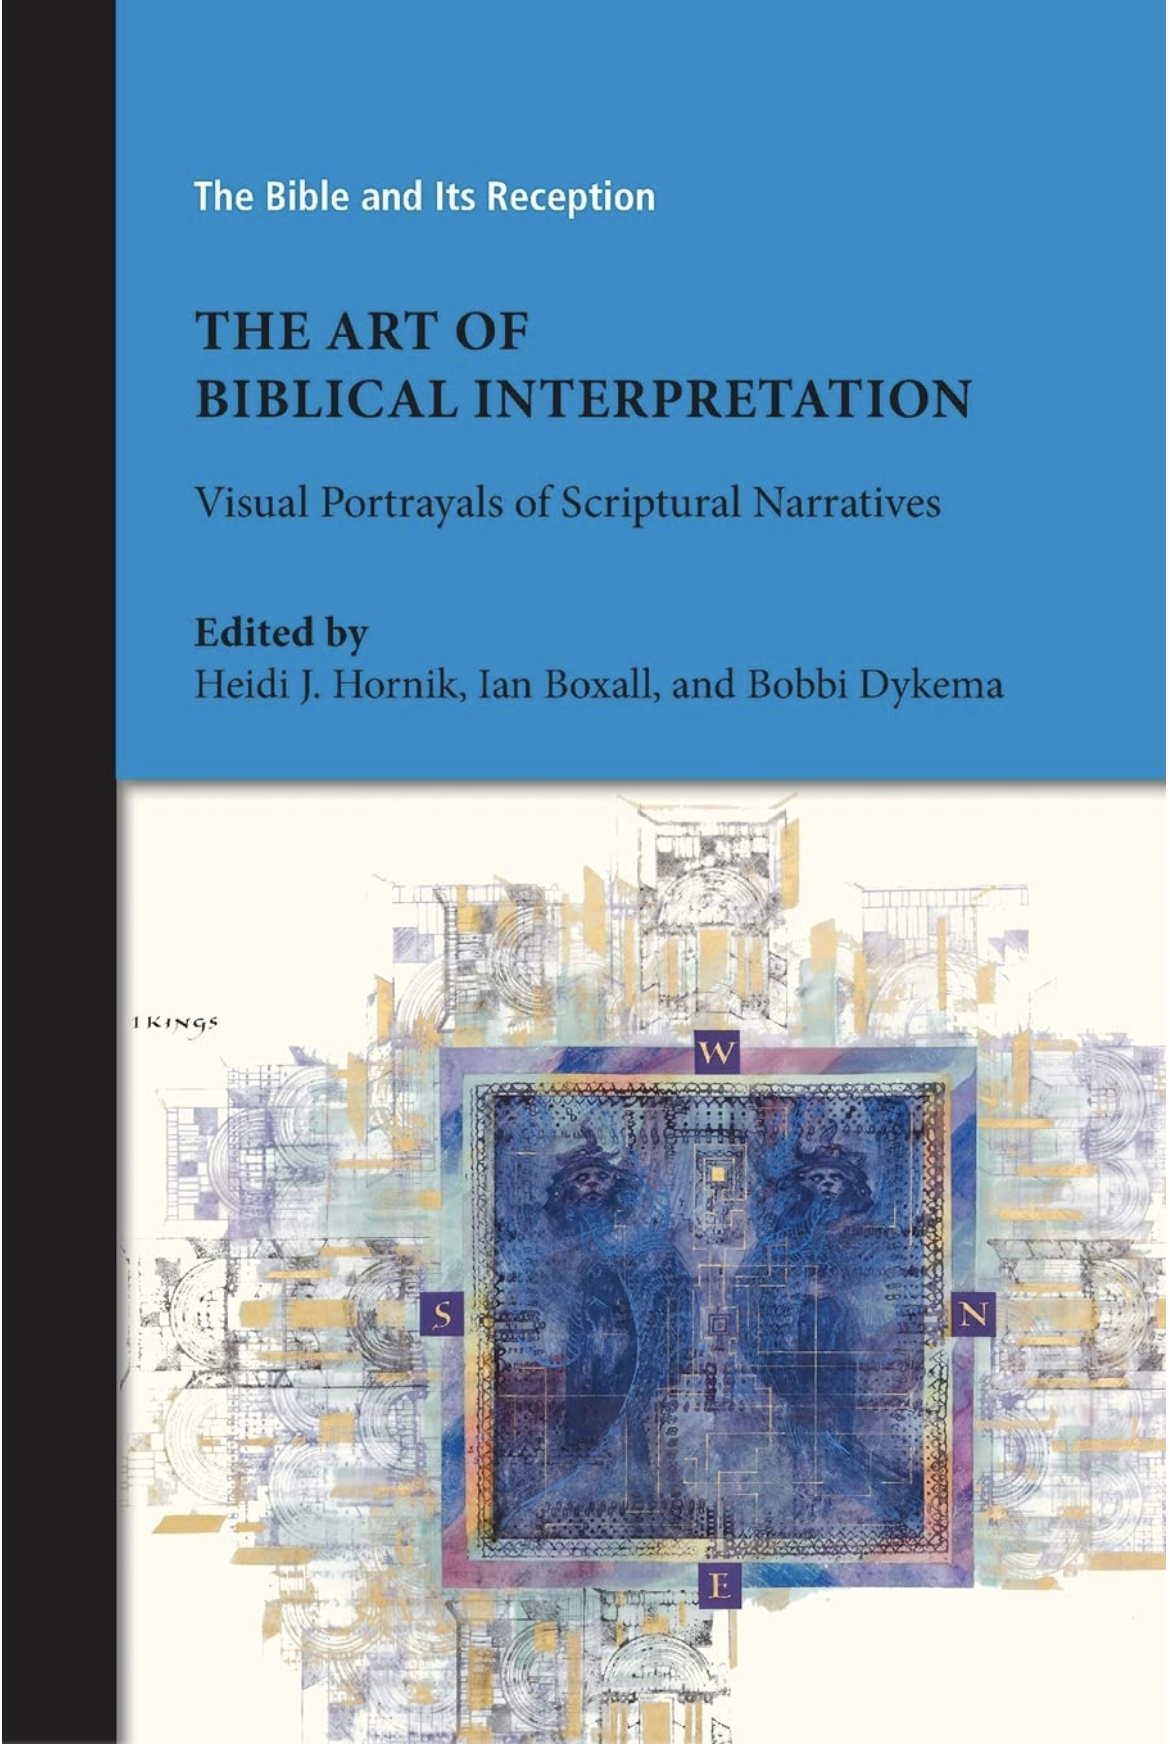 The Art of Biblical Interpretation: Visual Portrayals of Scriptural Narratives